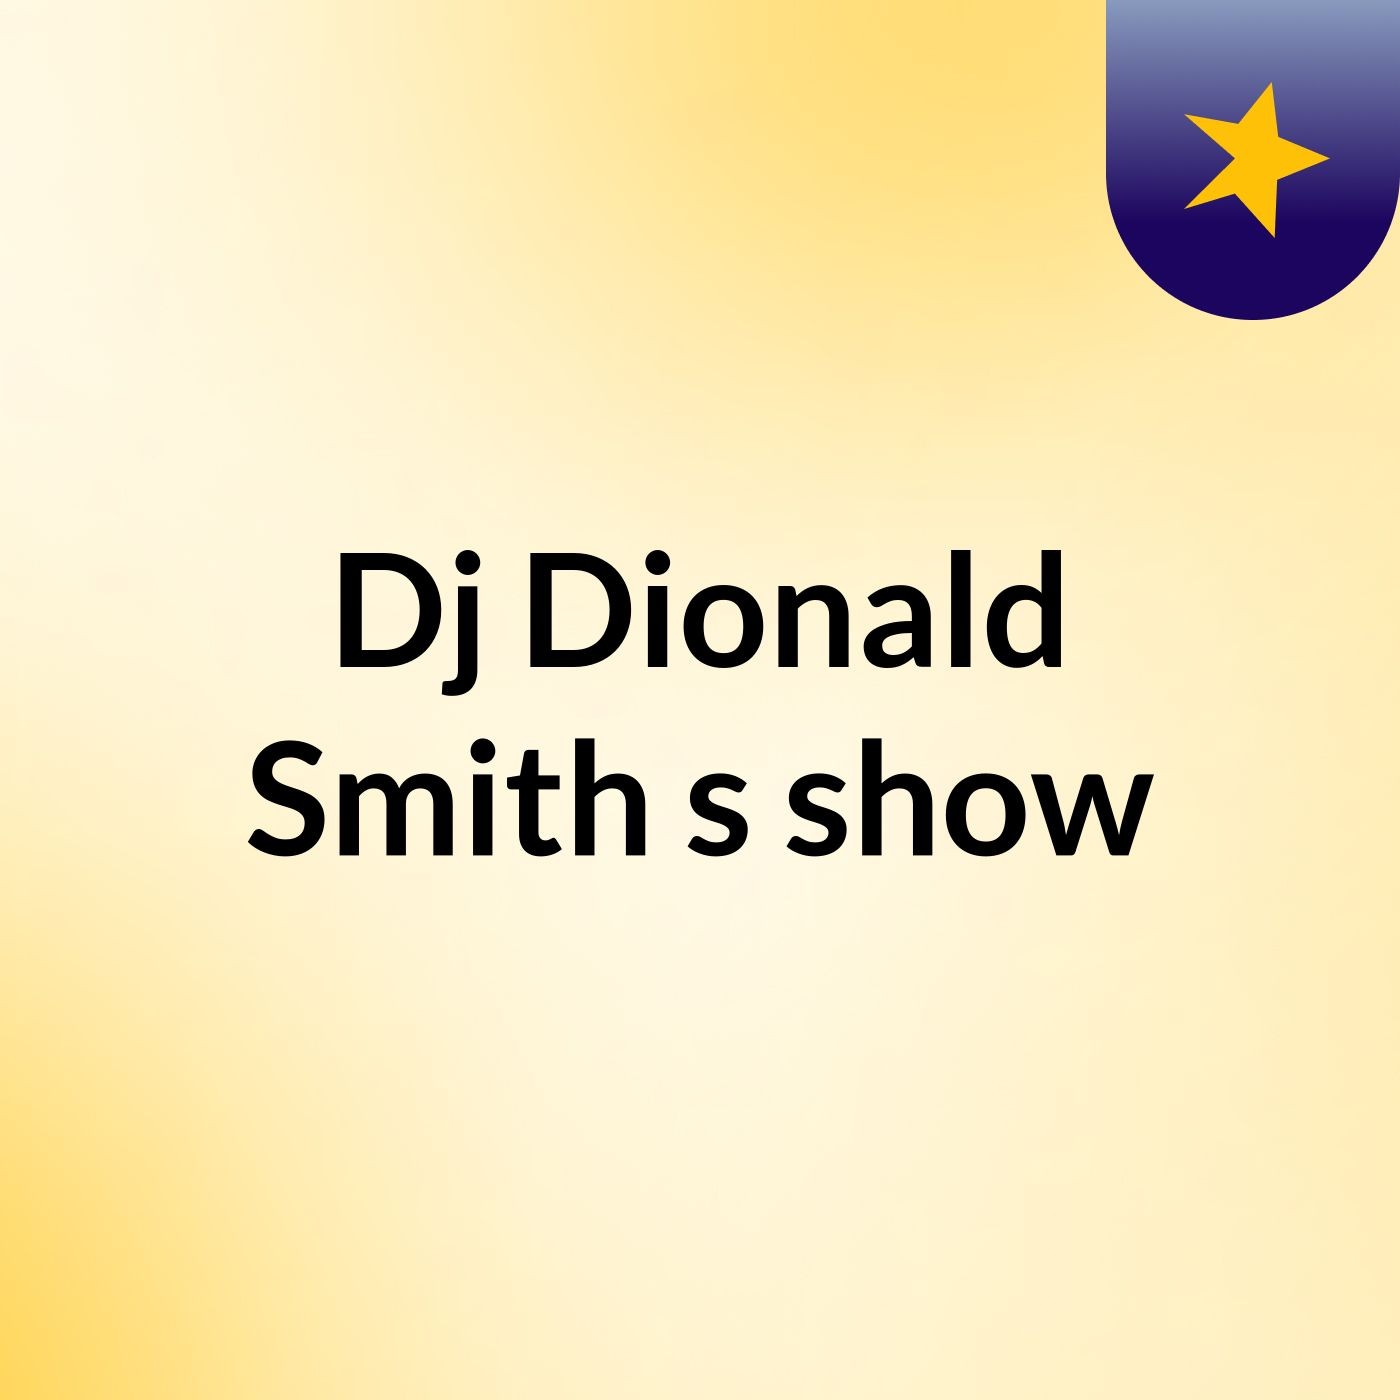 Dj'Dionald Smith's show